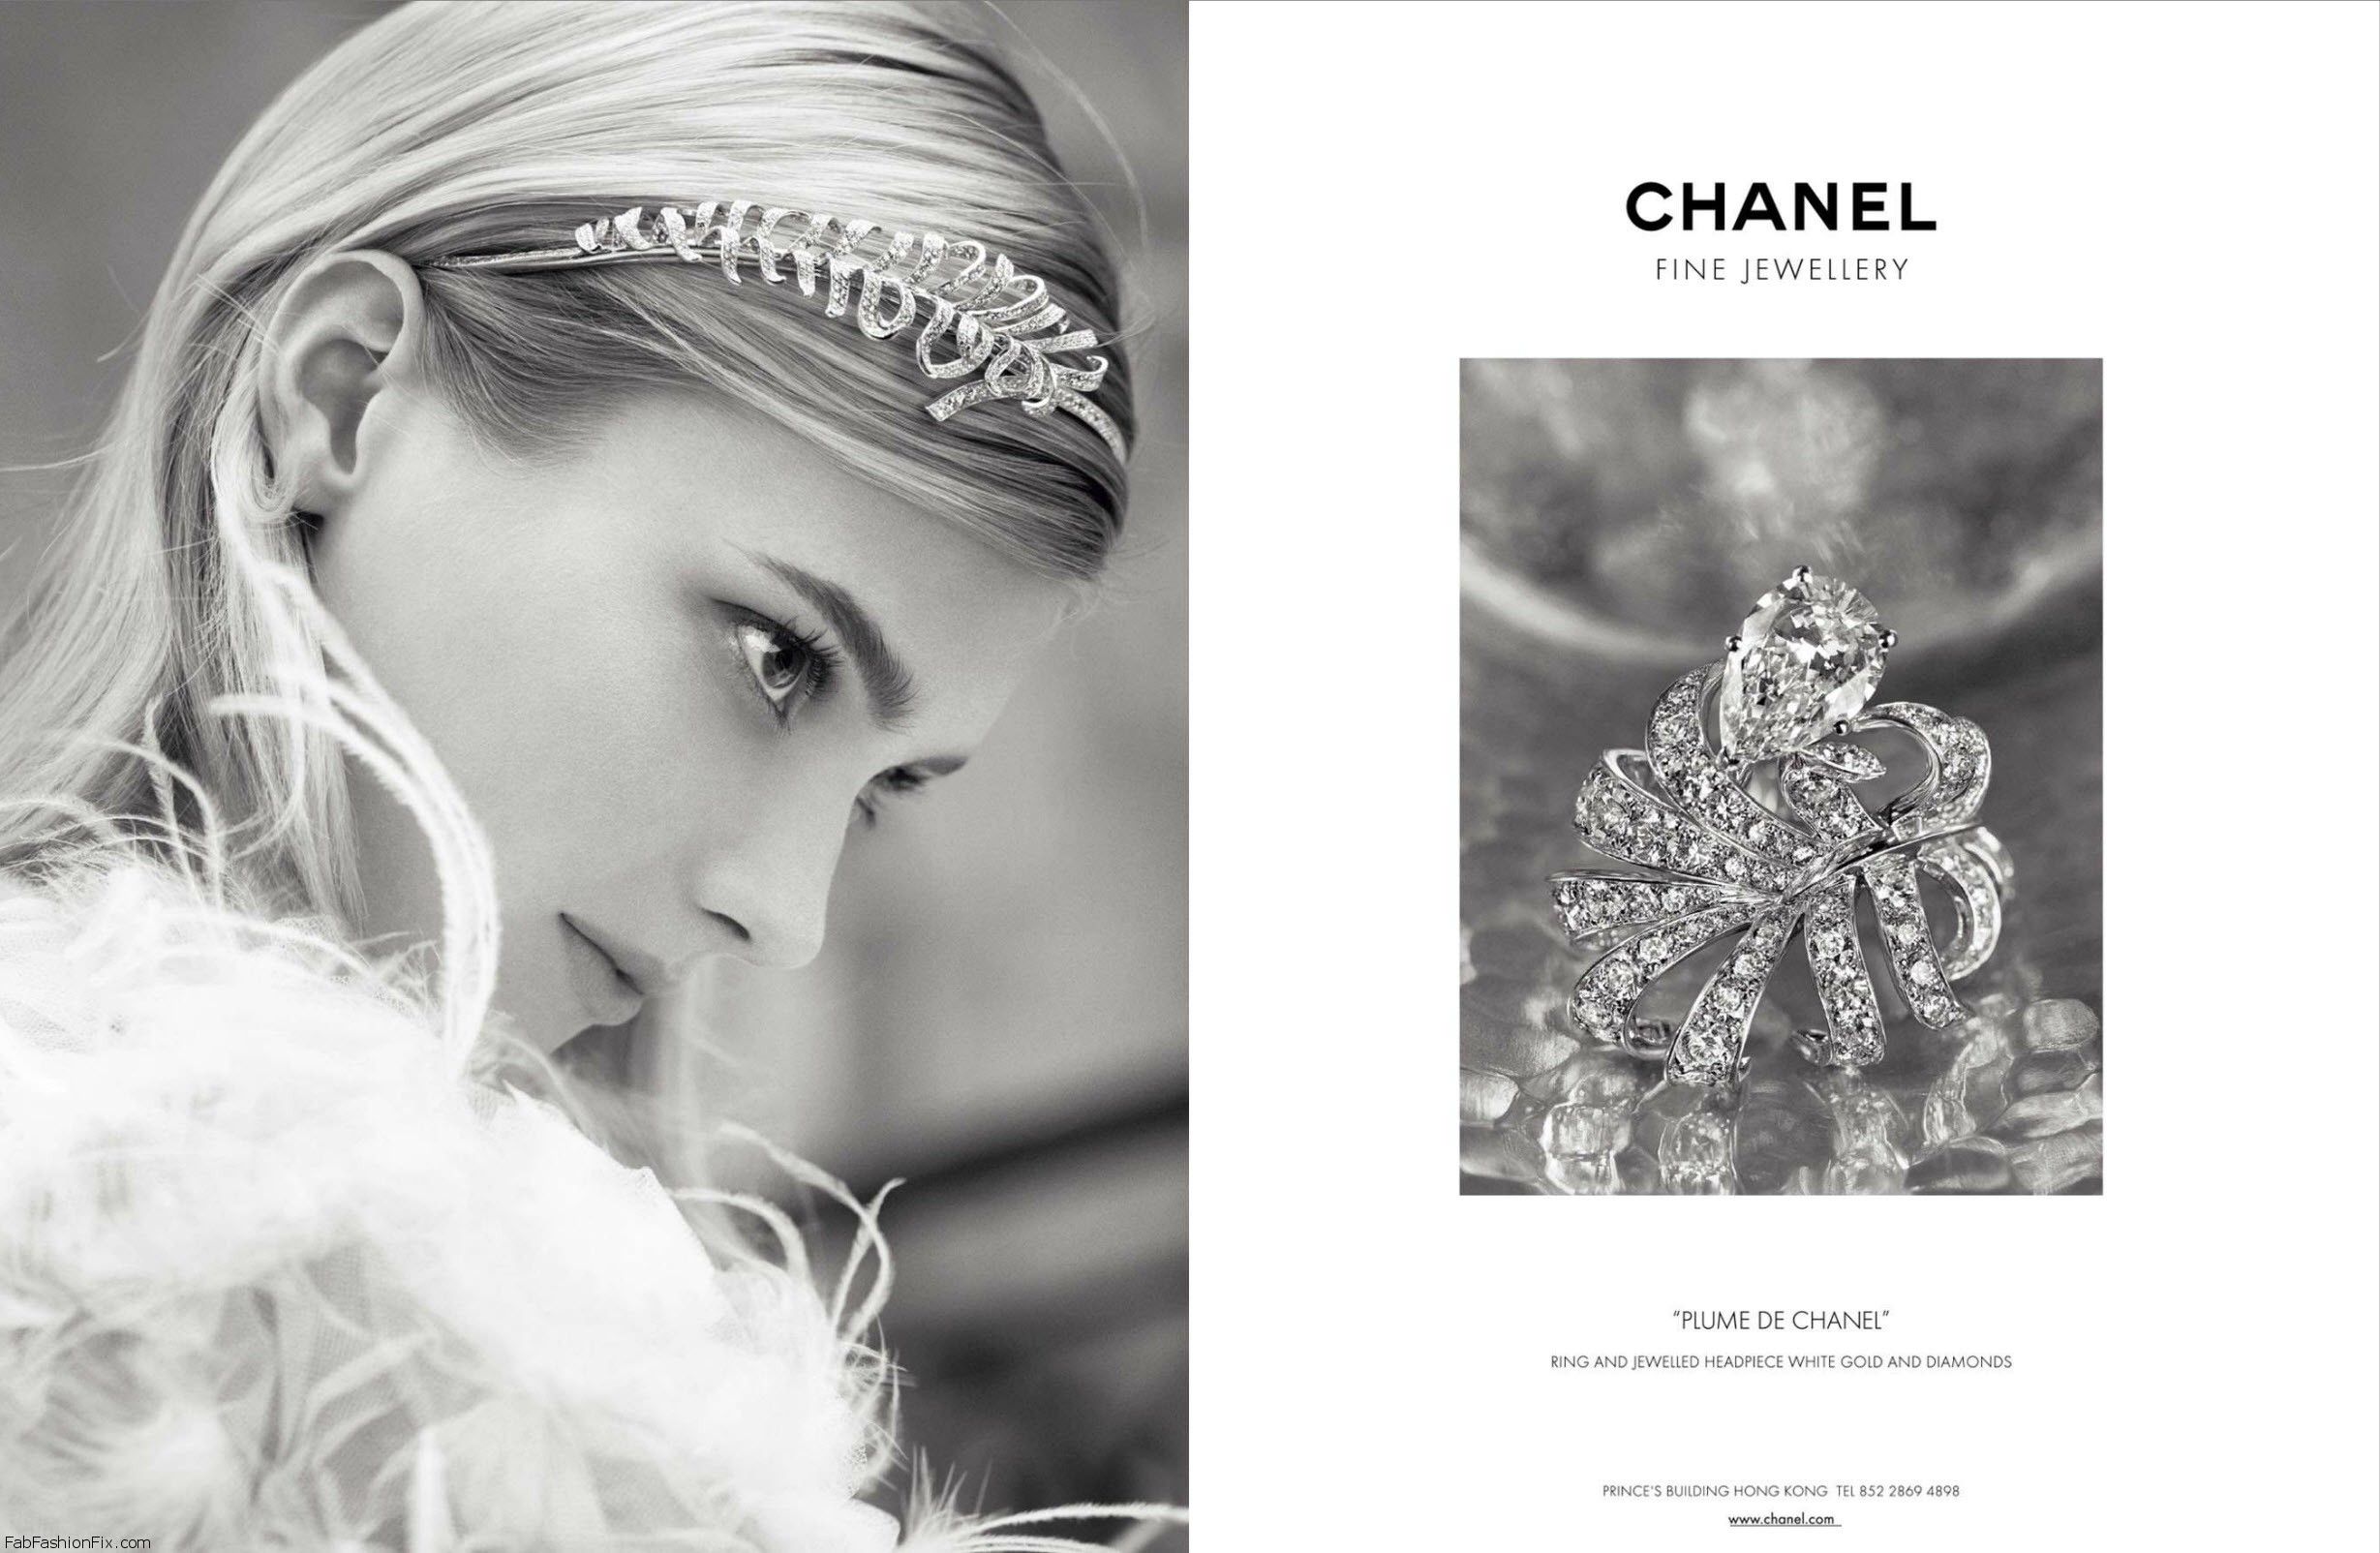 Chanel Fine Jewelry SS 2013  'Plume de Chanel' Jewelled headpiece